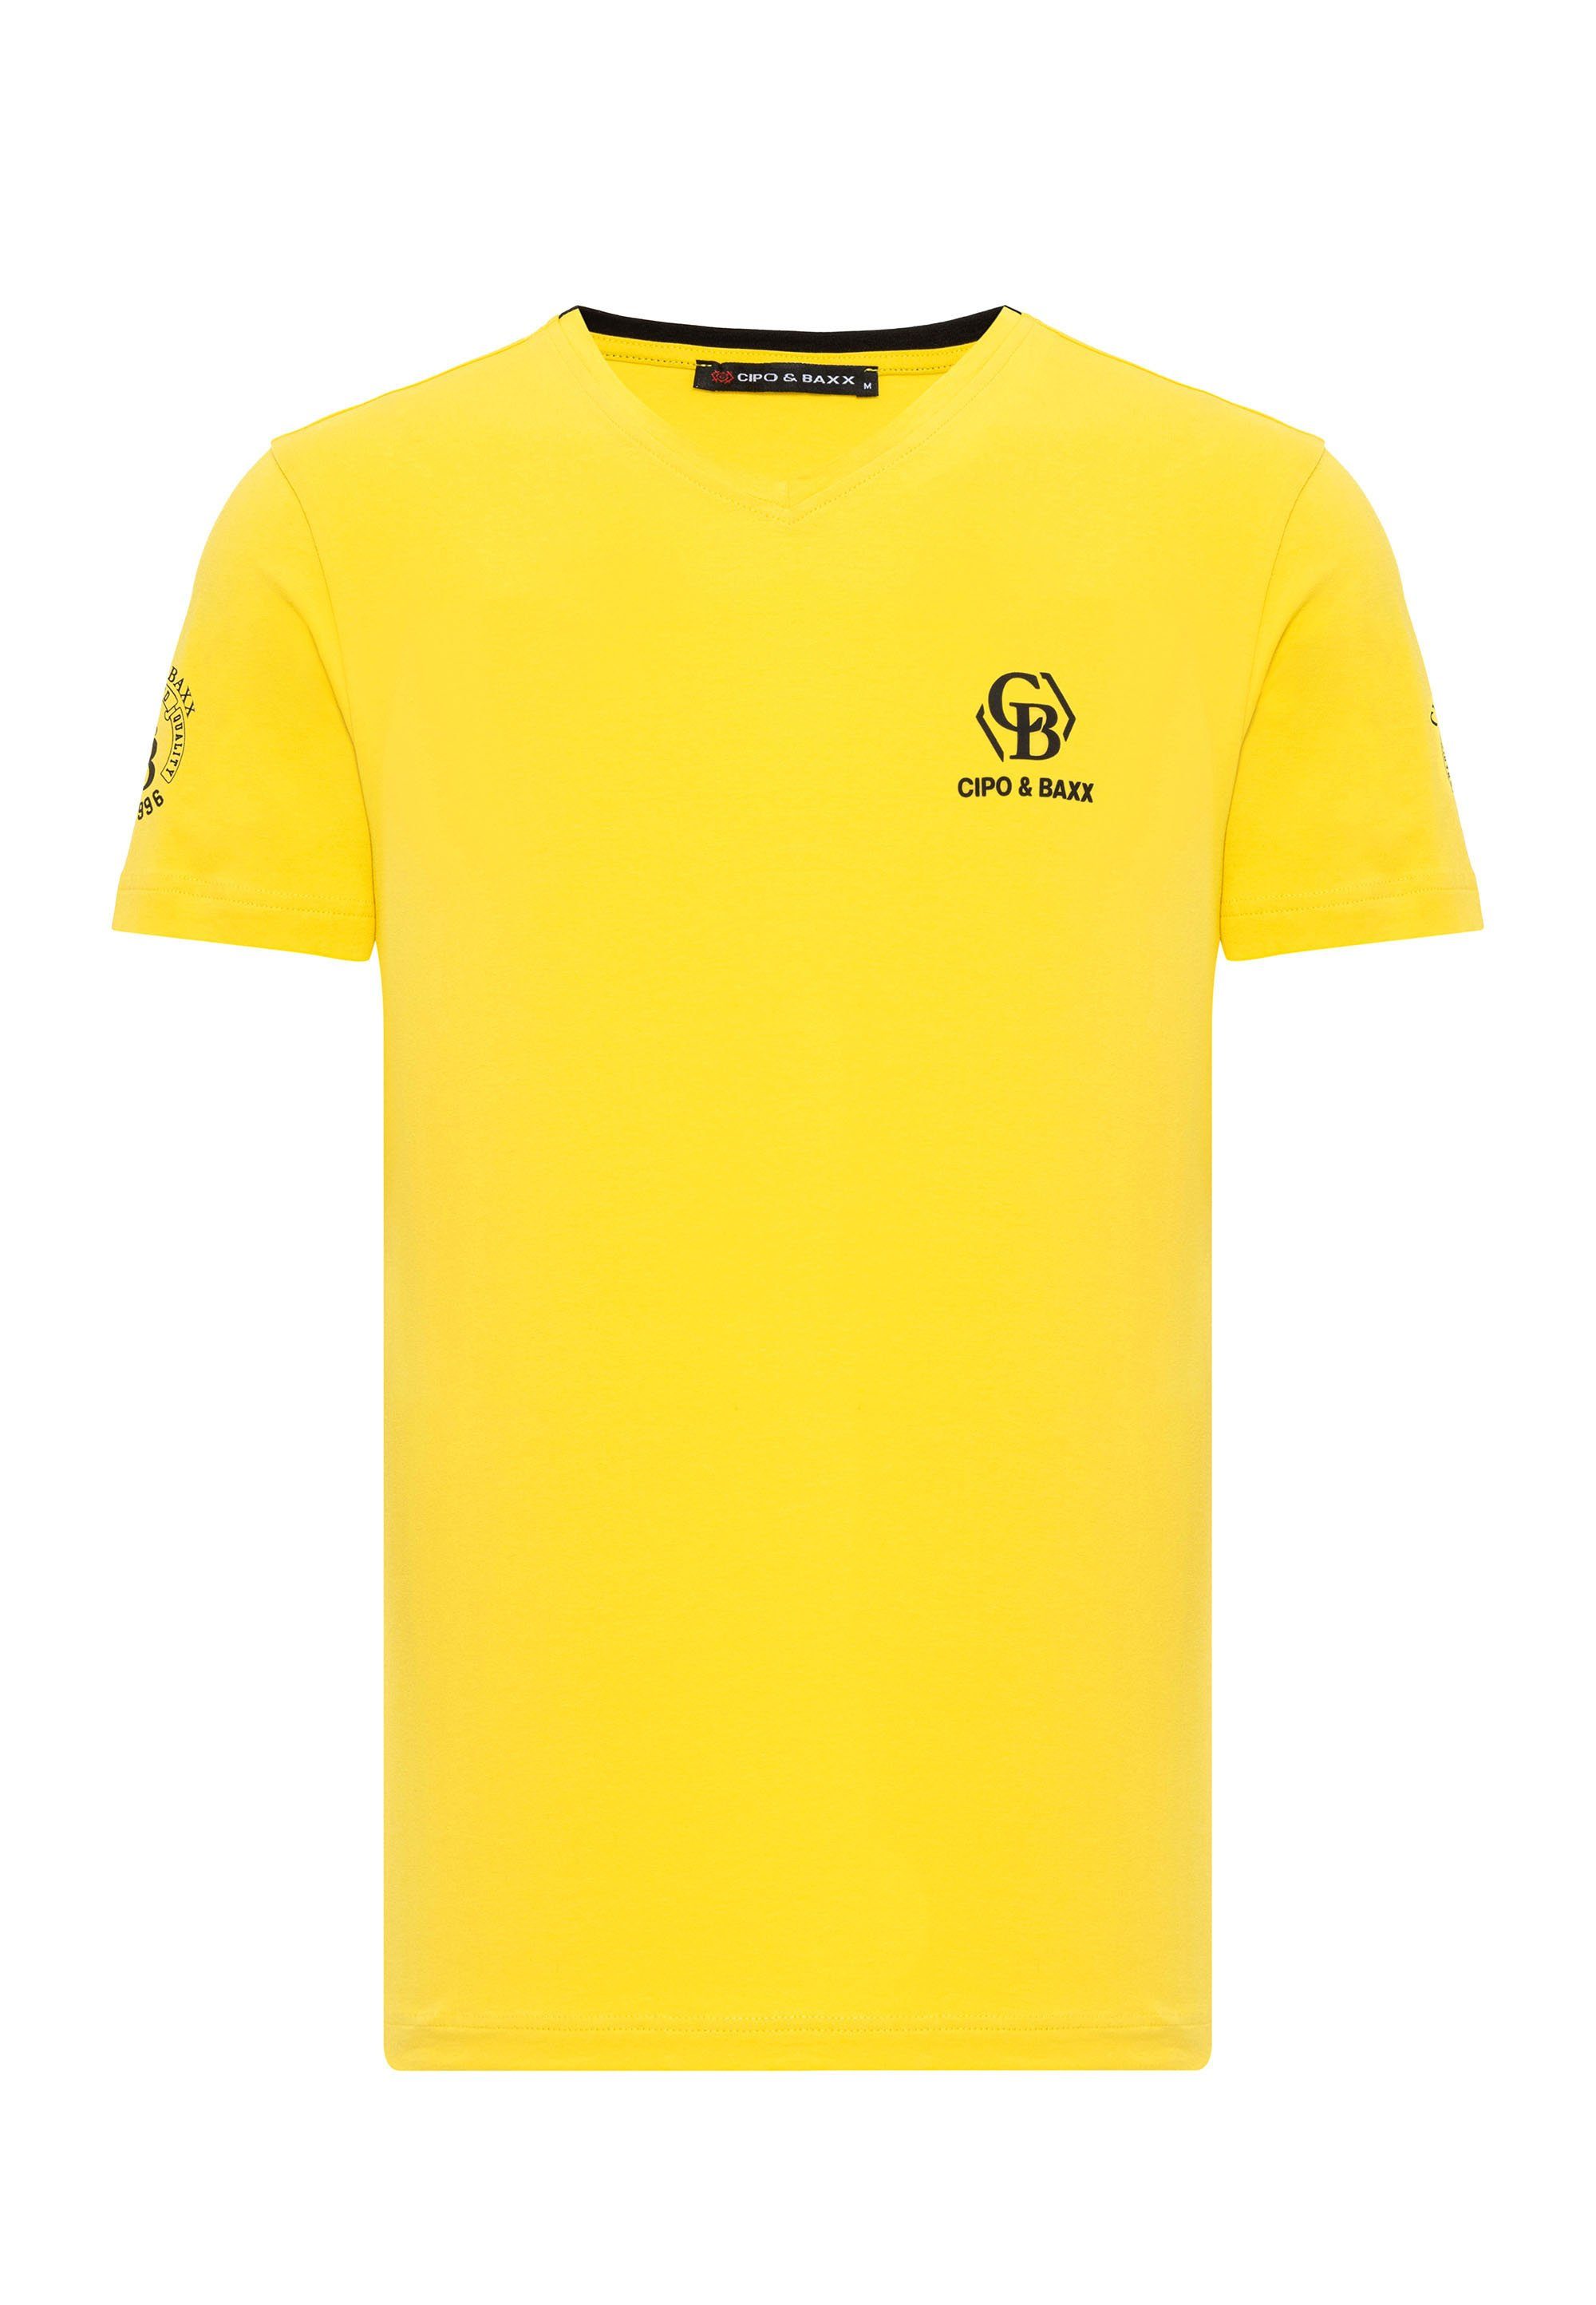 Cipo Markenlogos mit T-Shirt dezenten gelb & Baxx